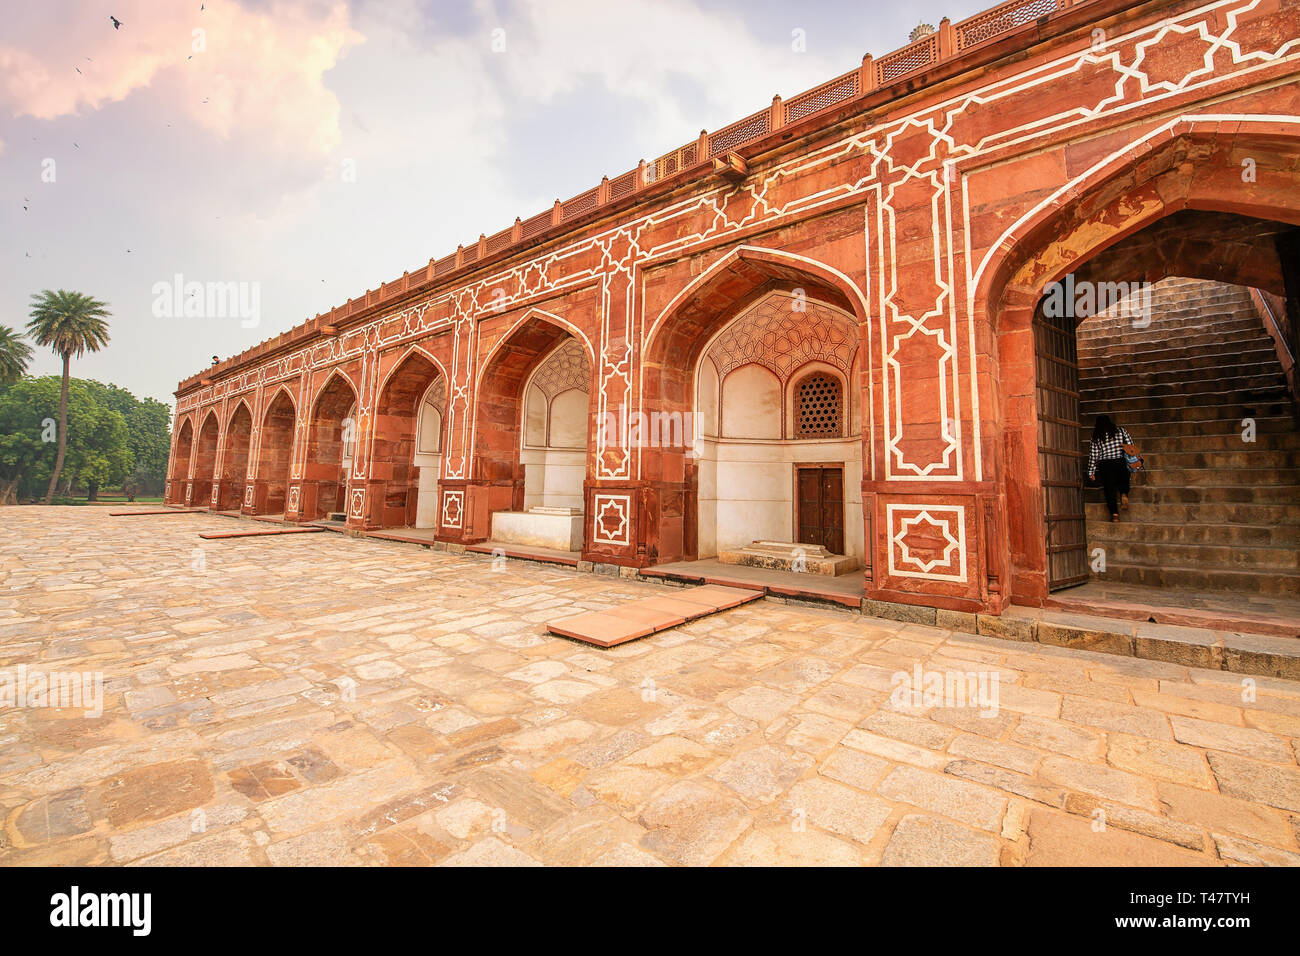 Arquitectura antigua hecha de la piedra arenisca roja y mármol en la tumba de Humayun Delhi al atardecer Foto de stock